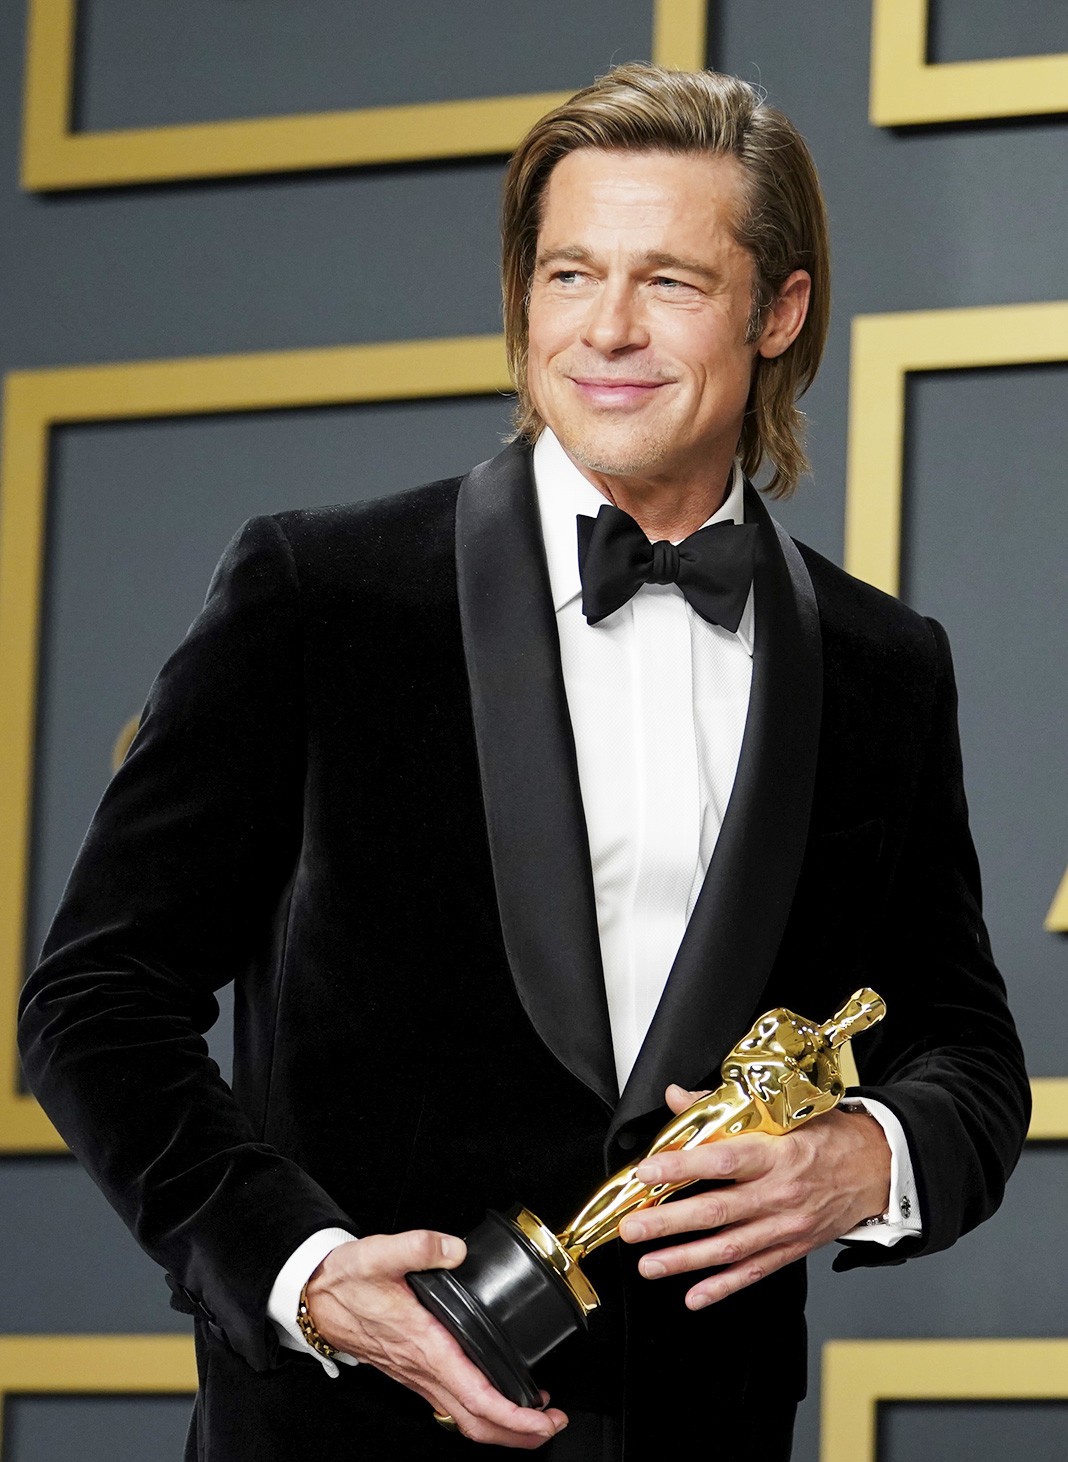 Награжден Оскаром за лучшую мужскую роль второго плана в фильме «Однажды в Голливуде», 9 февраля 2020 г.